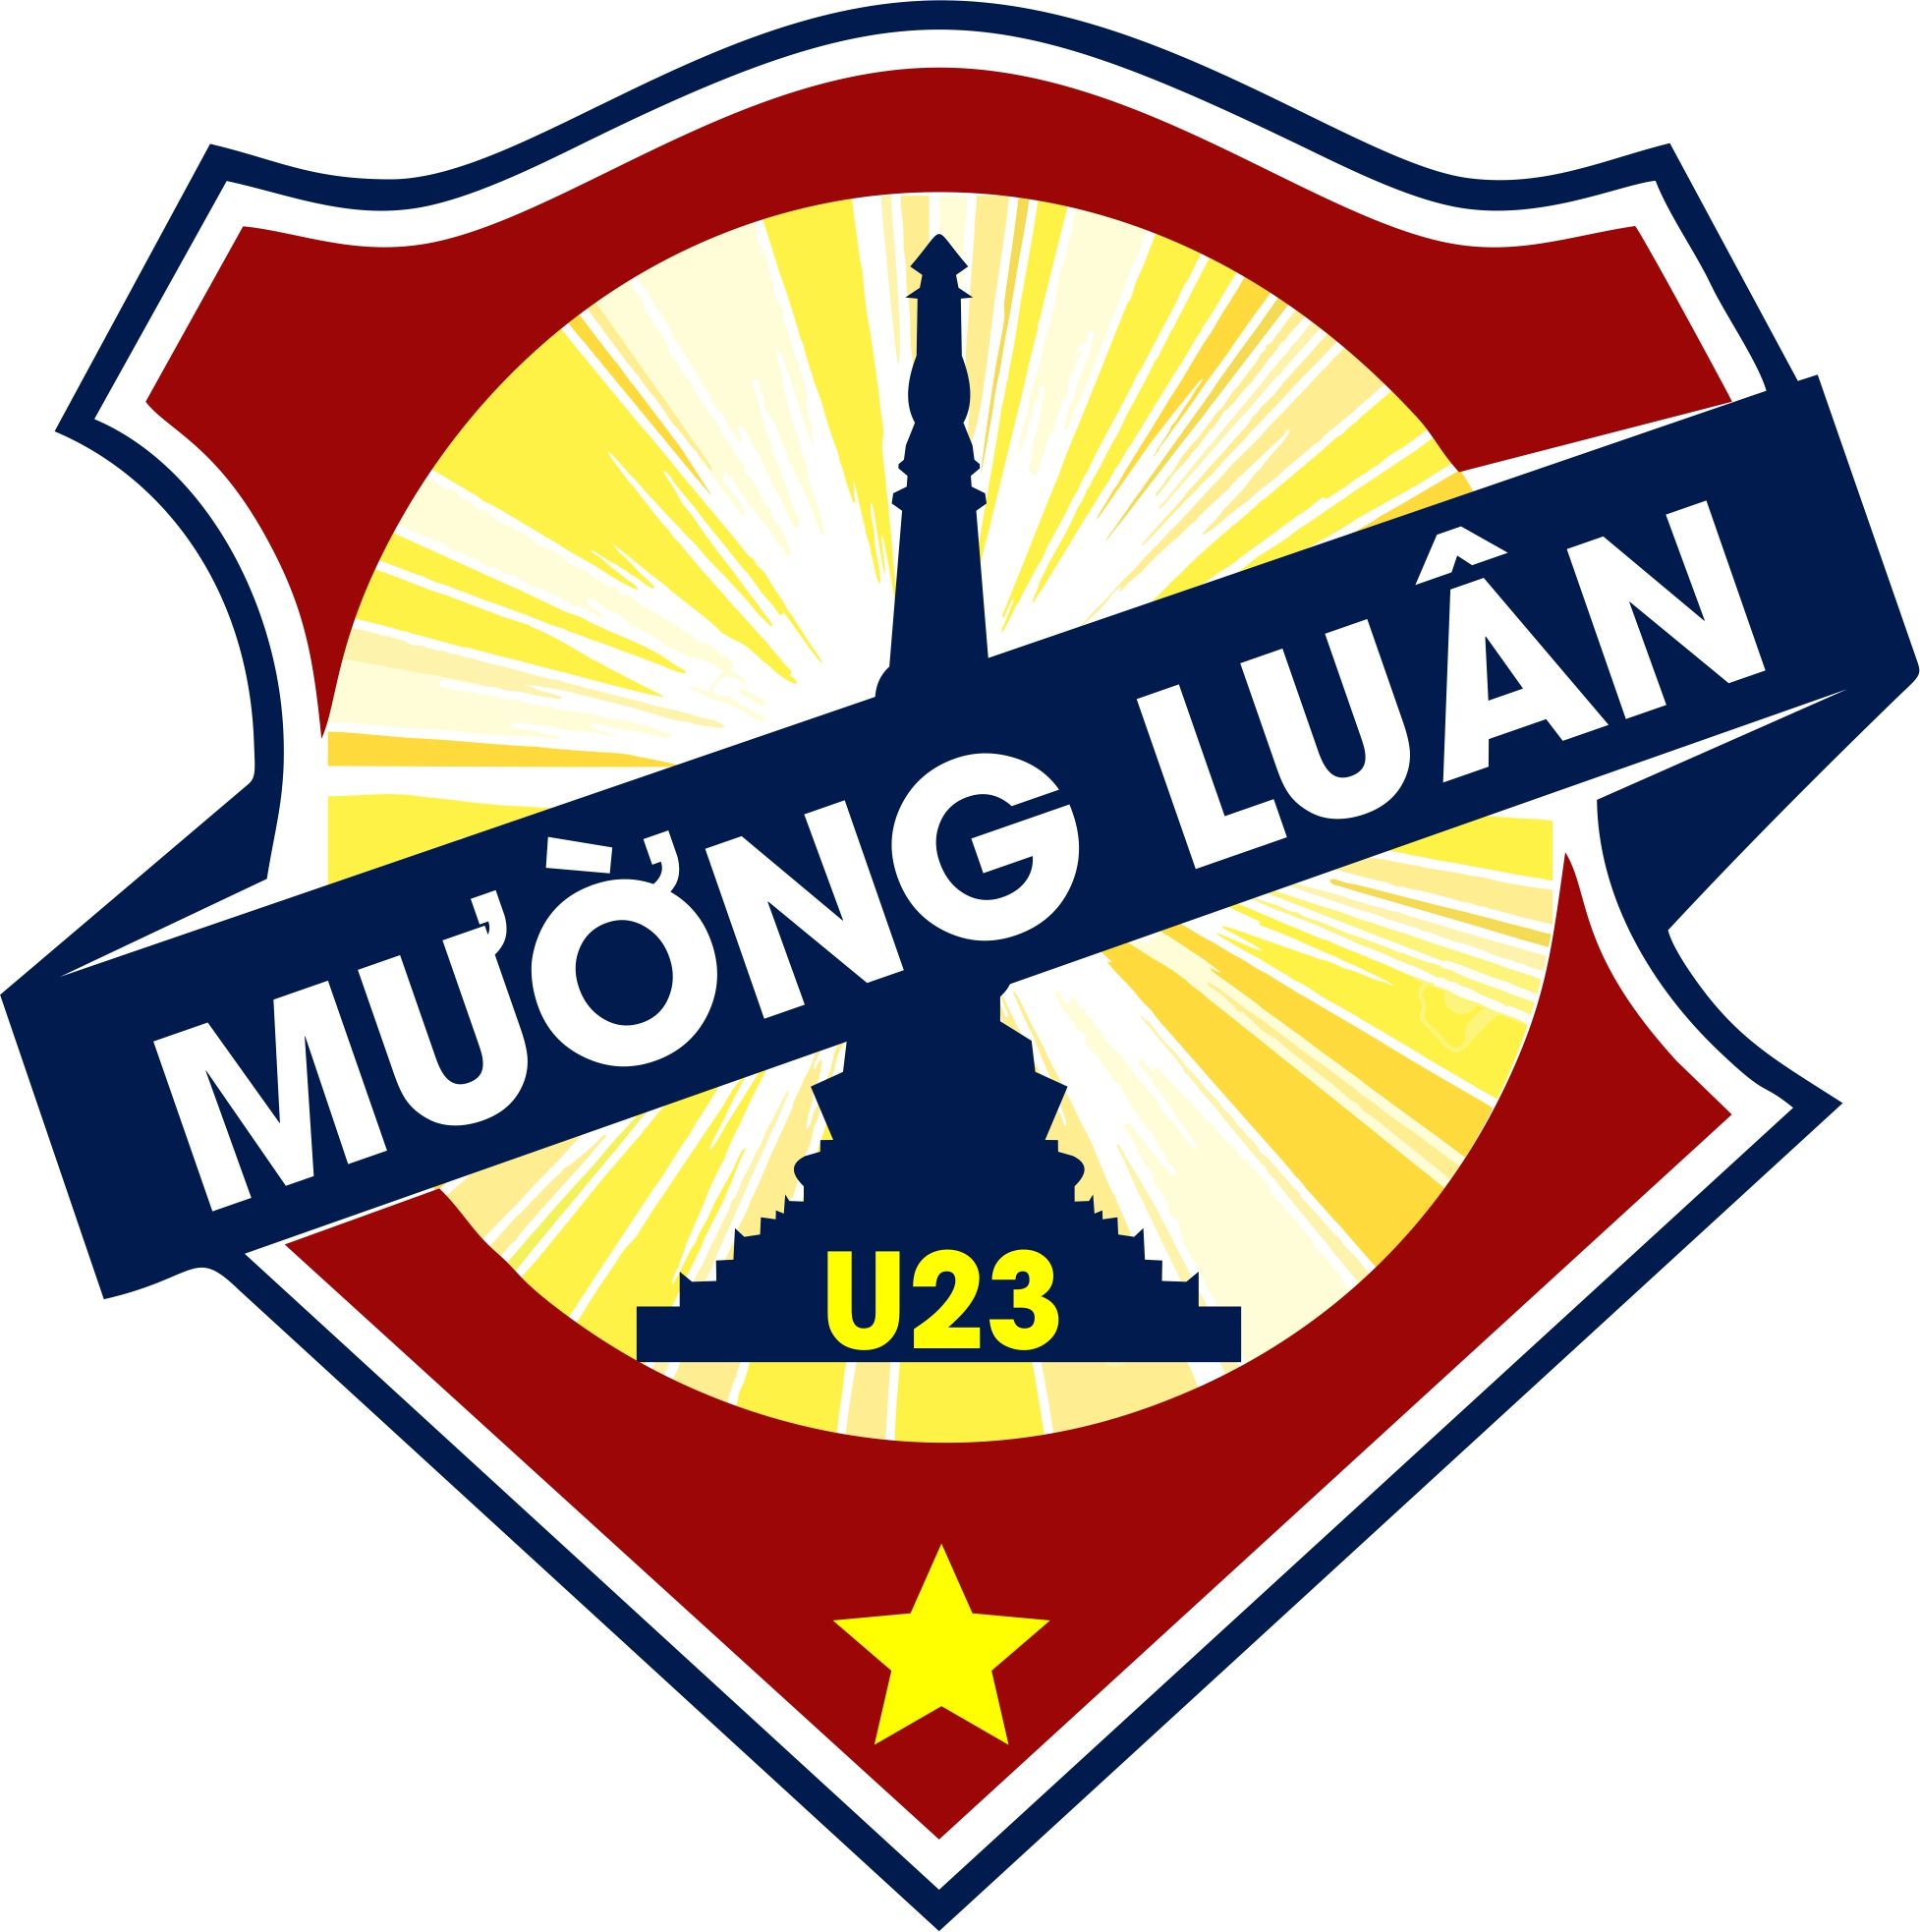 U23 Mường Luân 